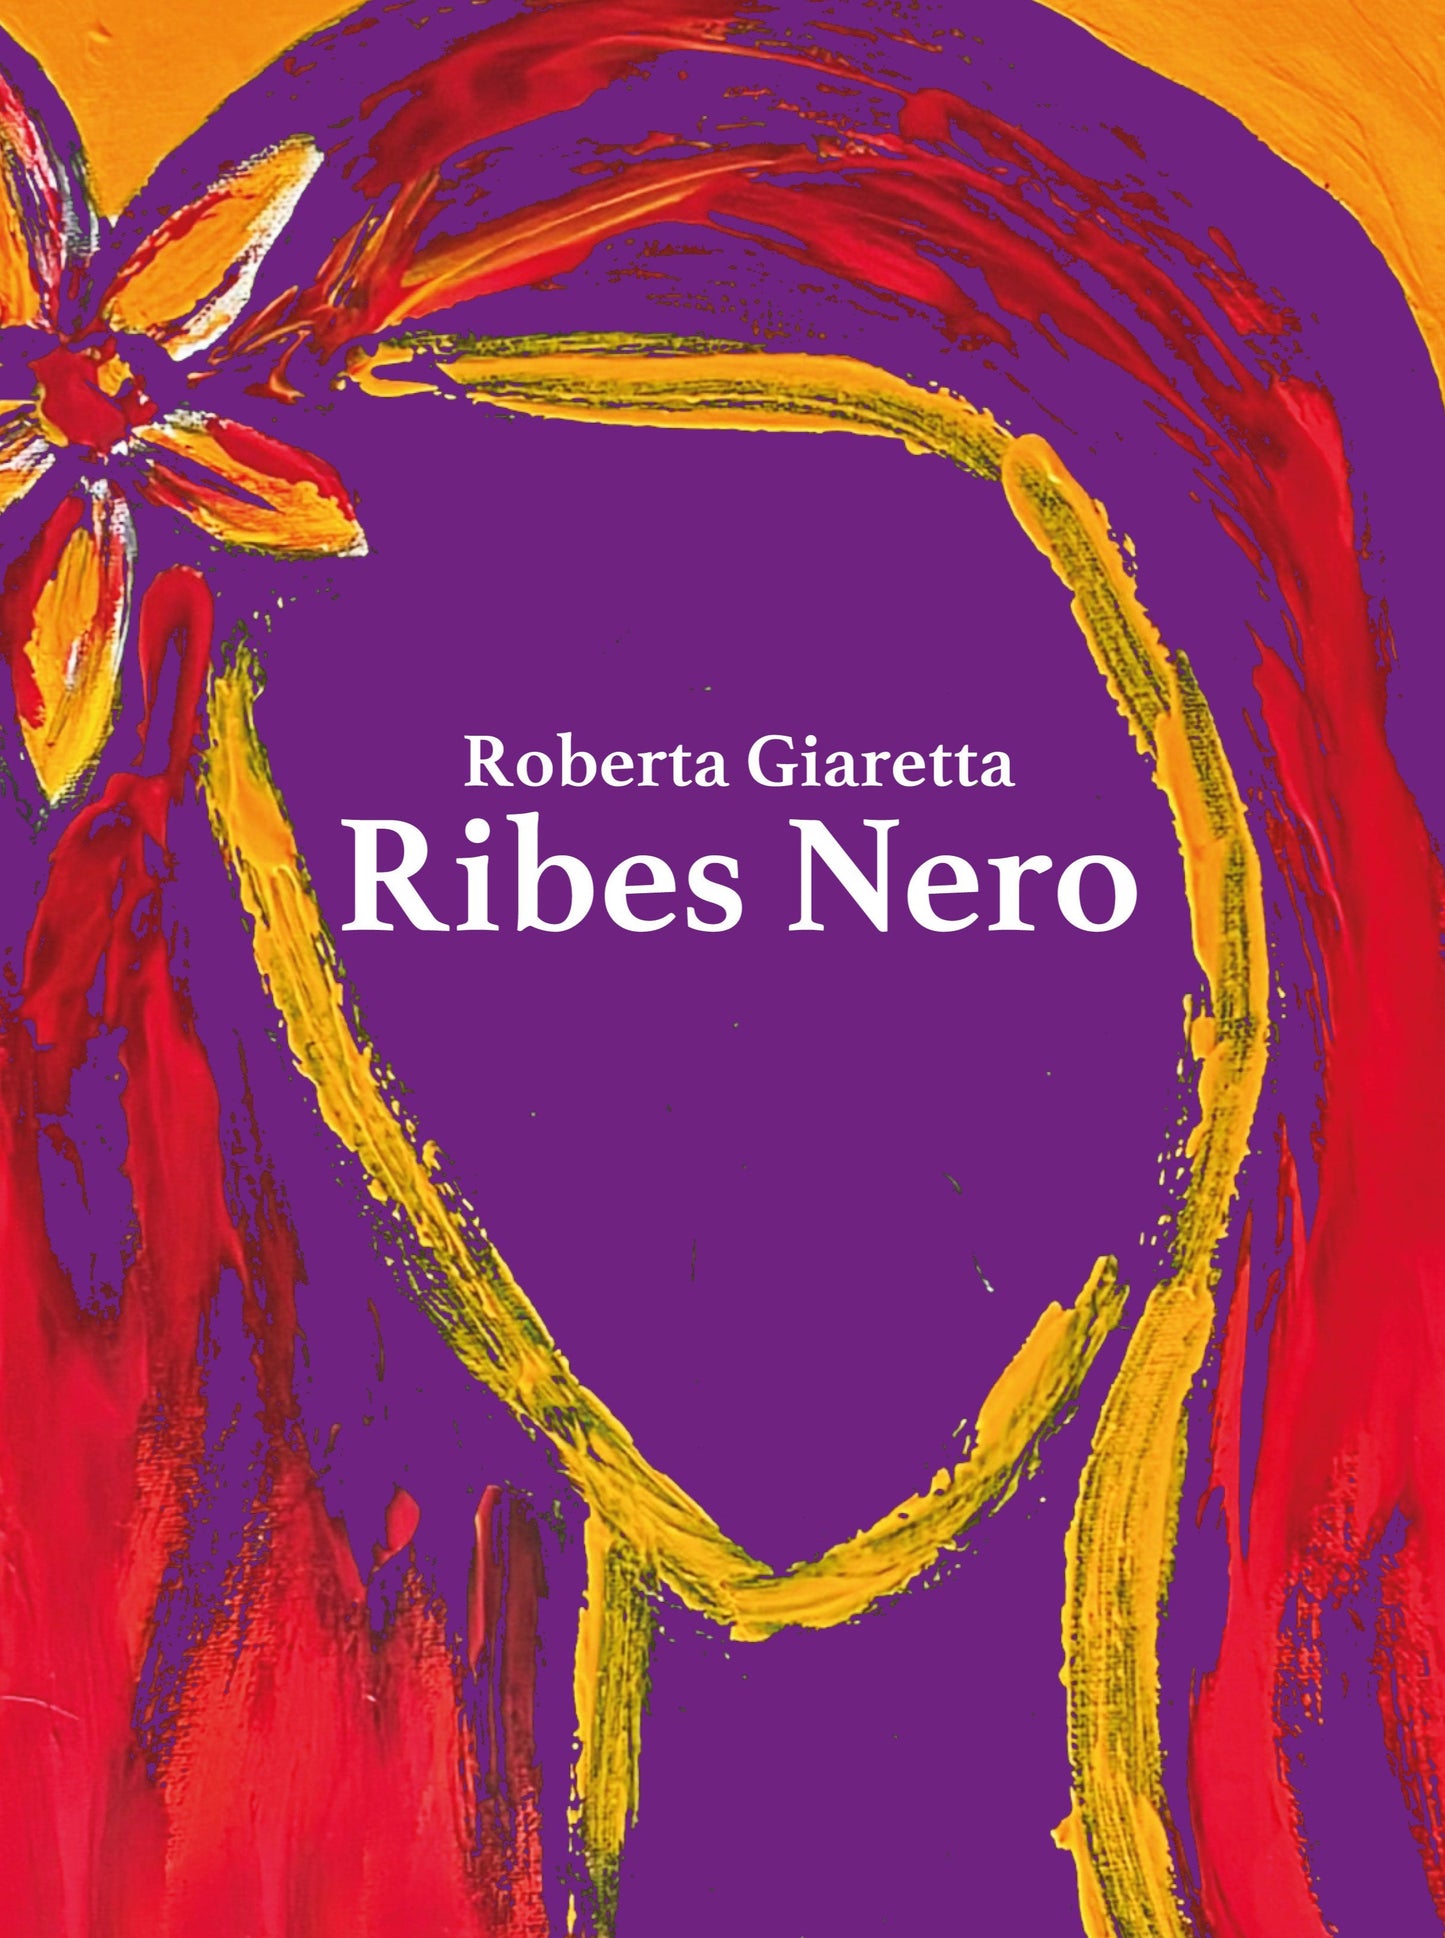 Roberta Giaretta - Ribes Nero